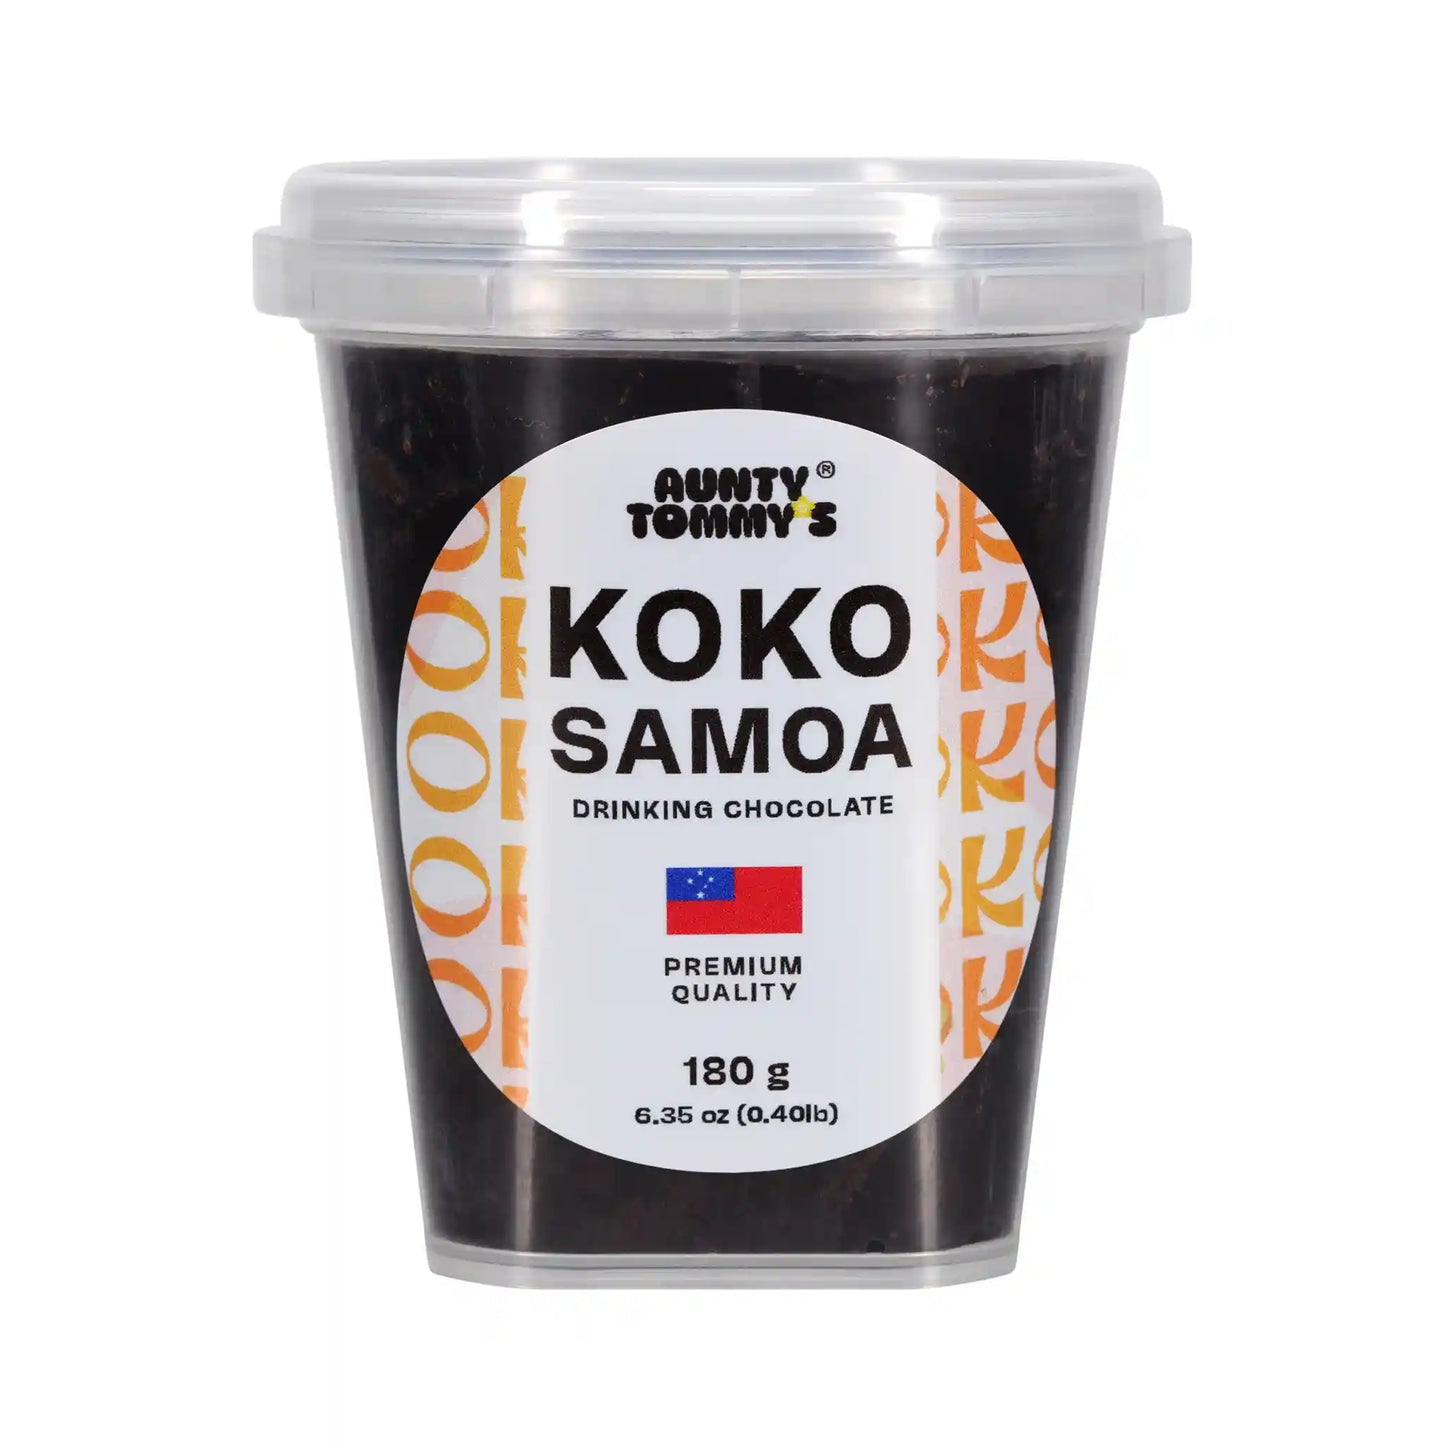 Koko Samoa Drinking Chocolate Block container 2